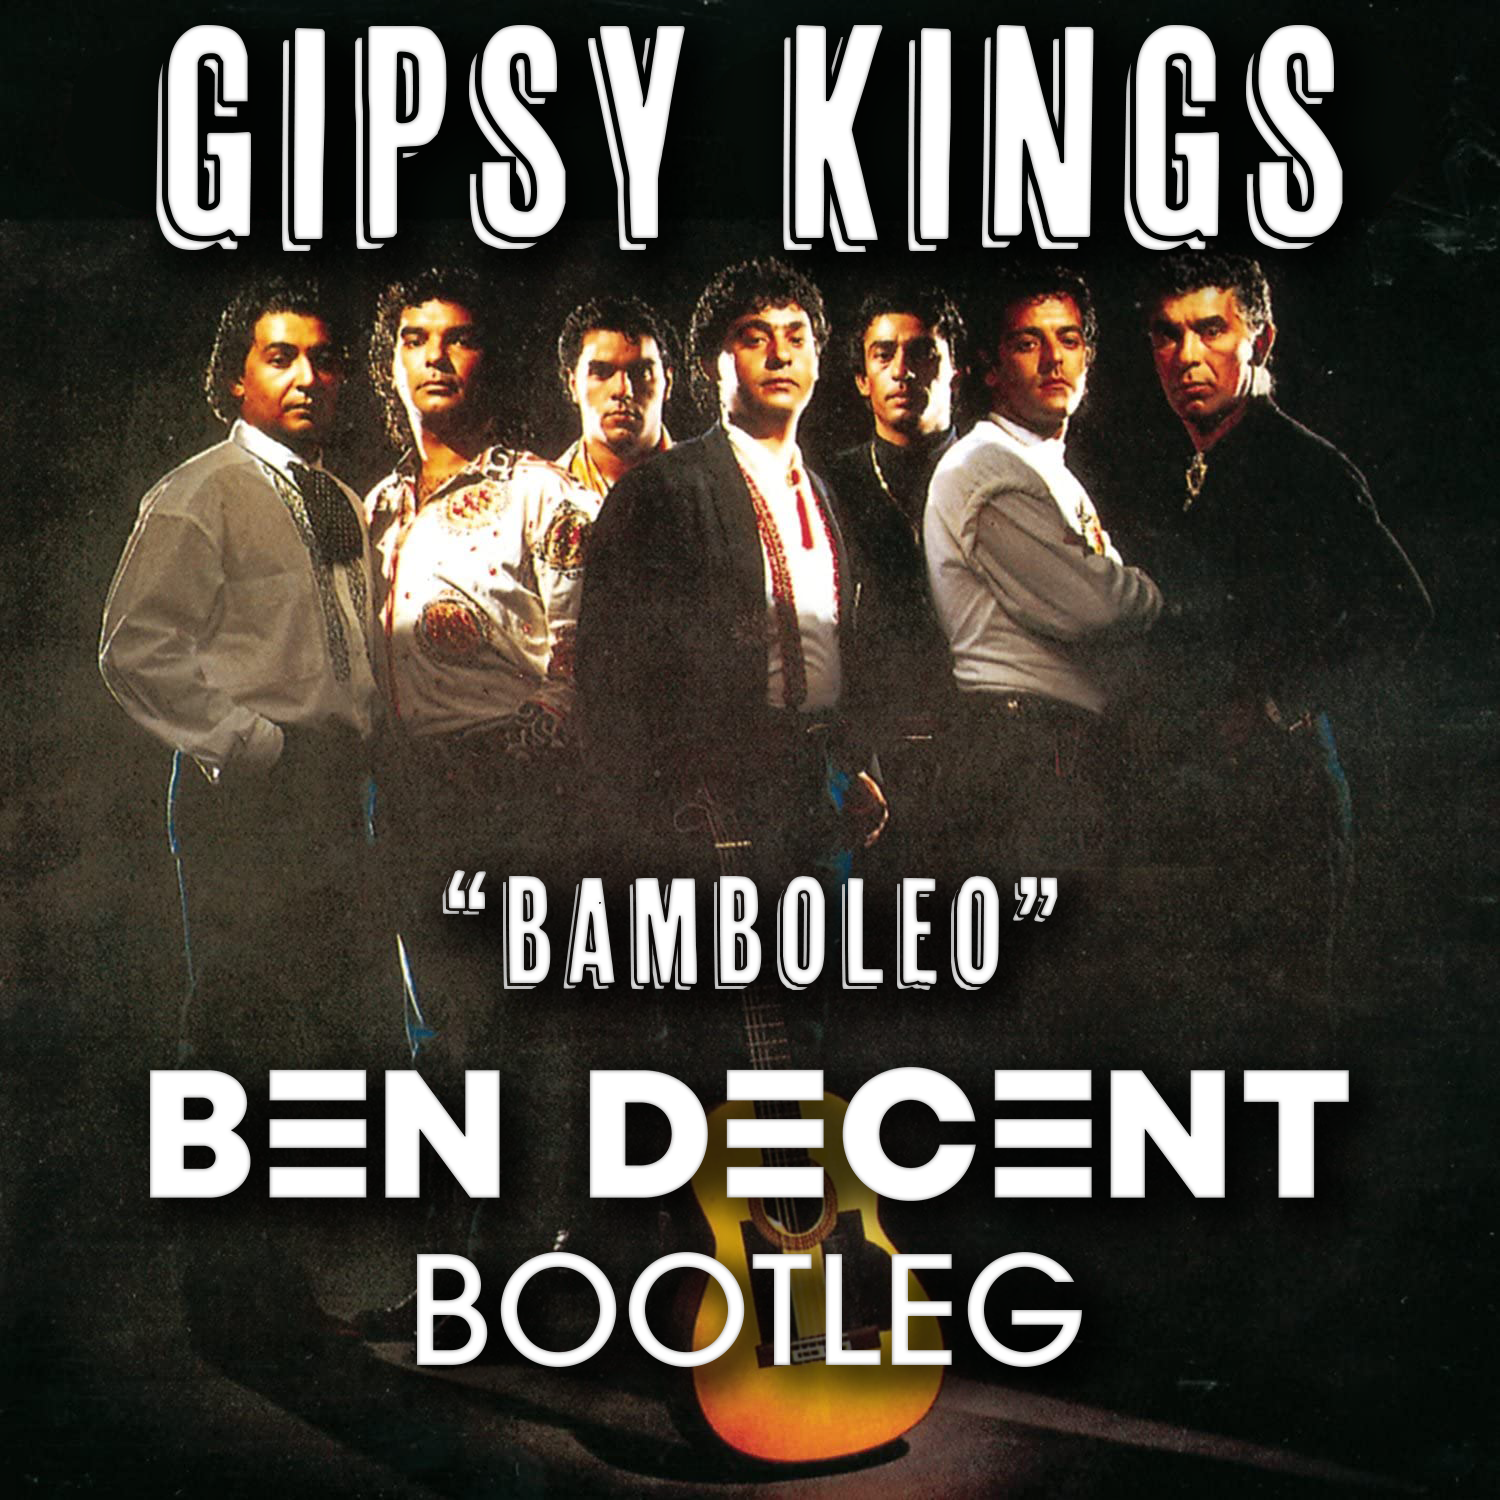 Gipsy kings песни. Gipsy Kings. Gipsy Kings Bamboleo. Gipsy Kings "Gipsy Kings". Gipsy Kings 1988 Bamboleo.